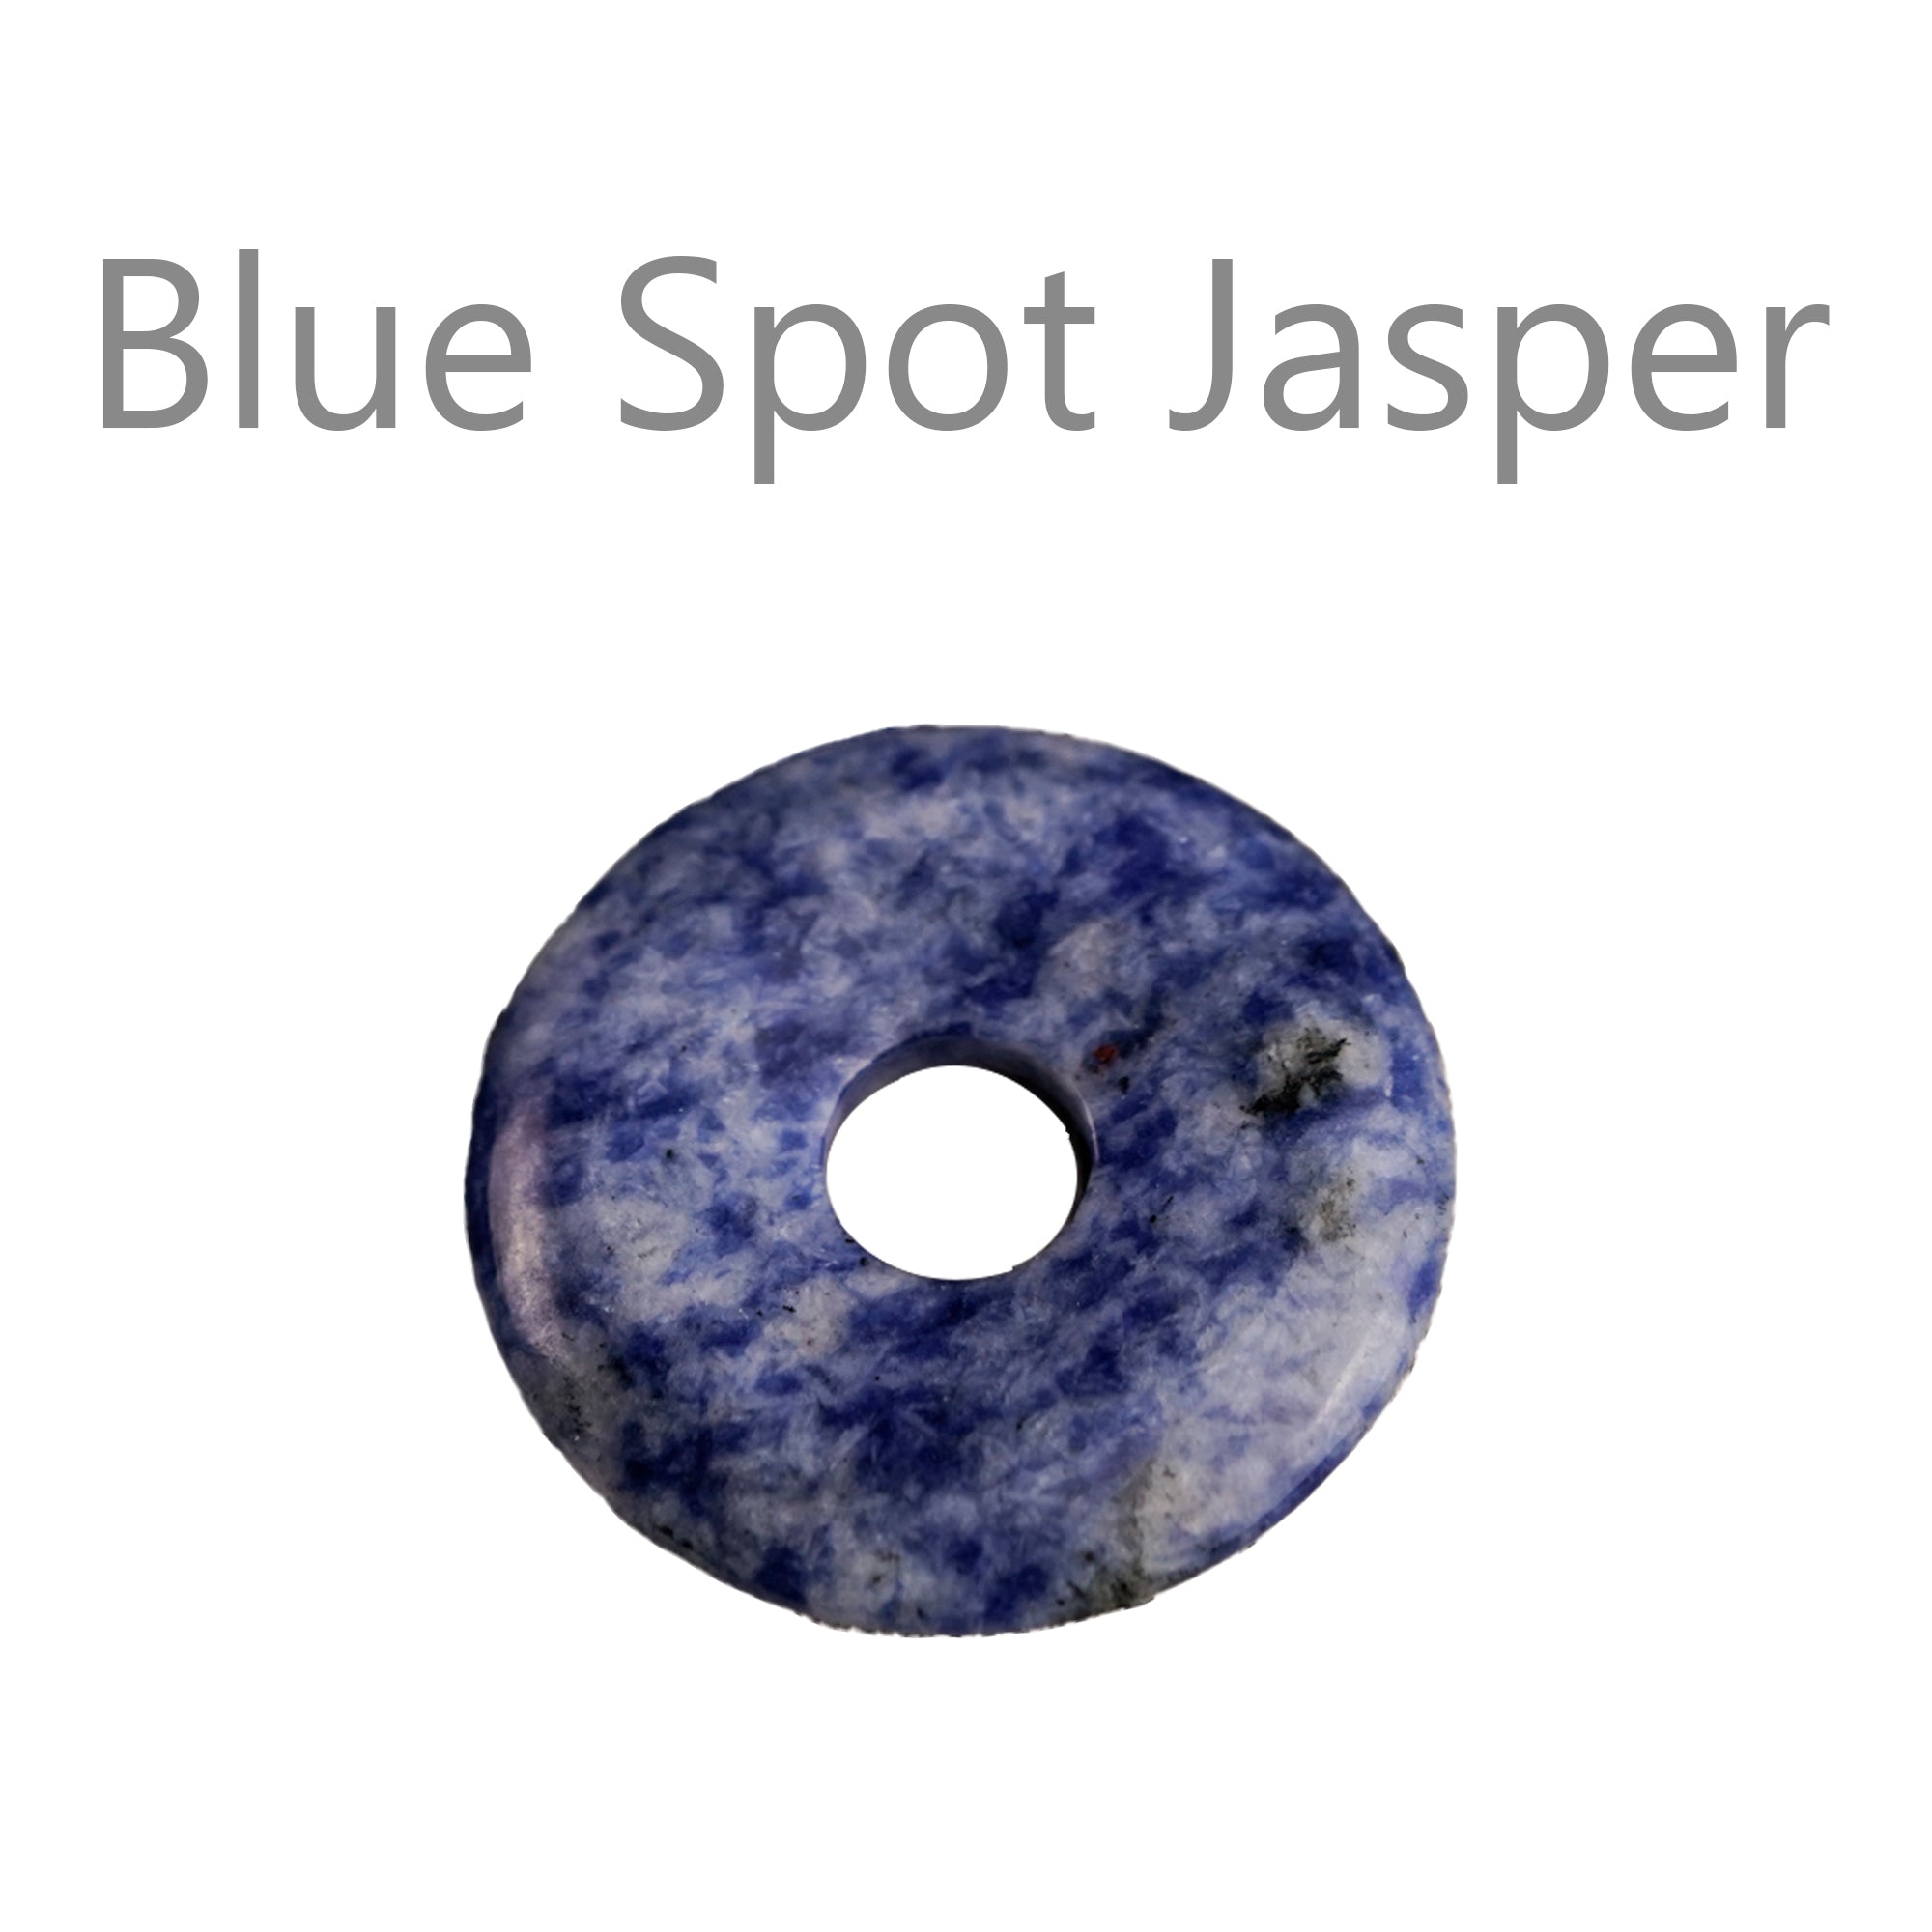 Blue Spot Jasper